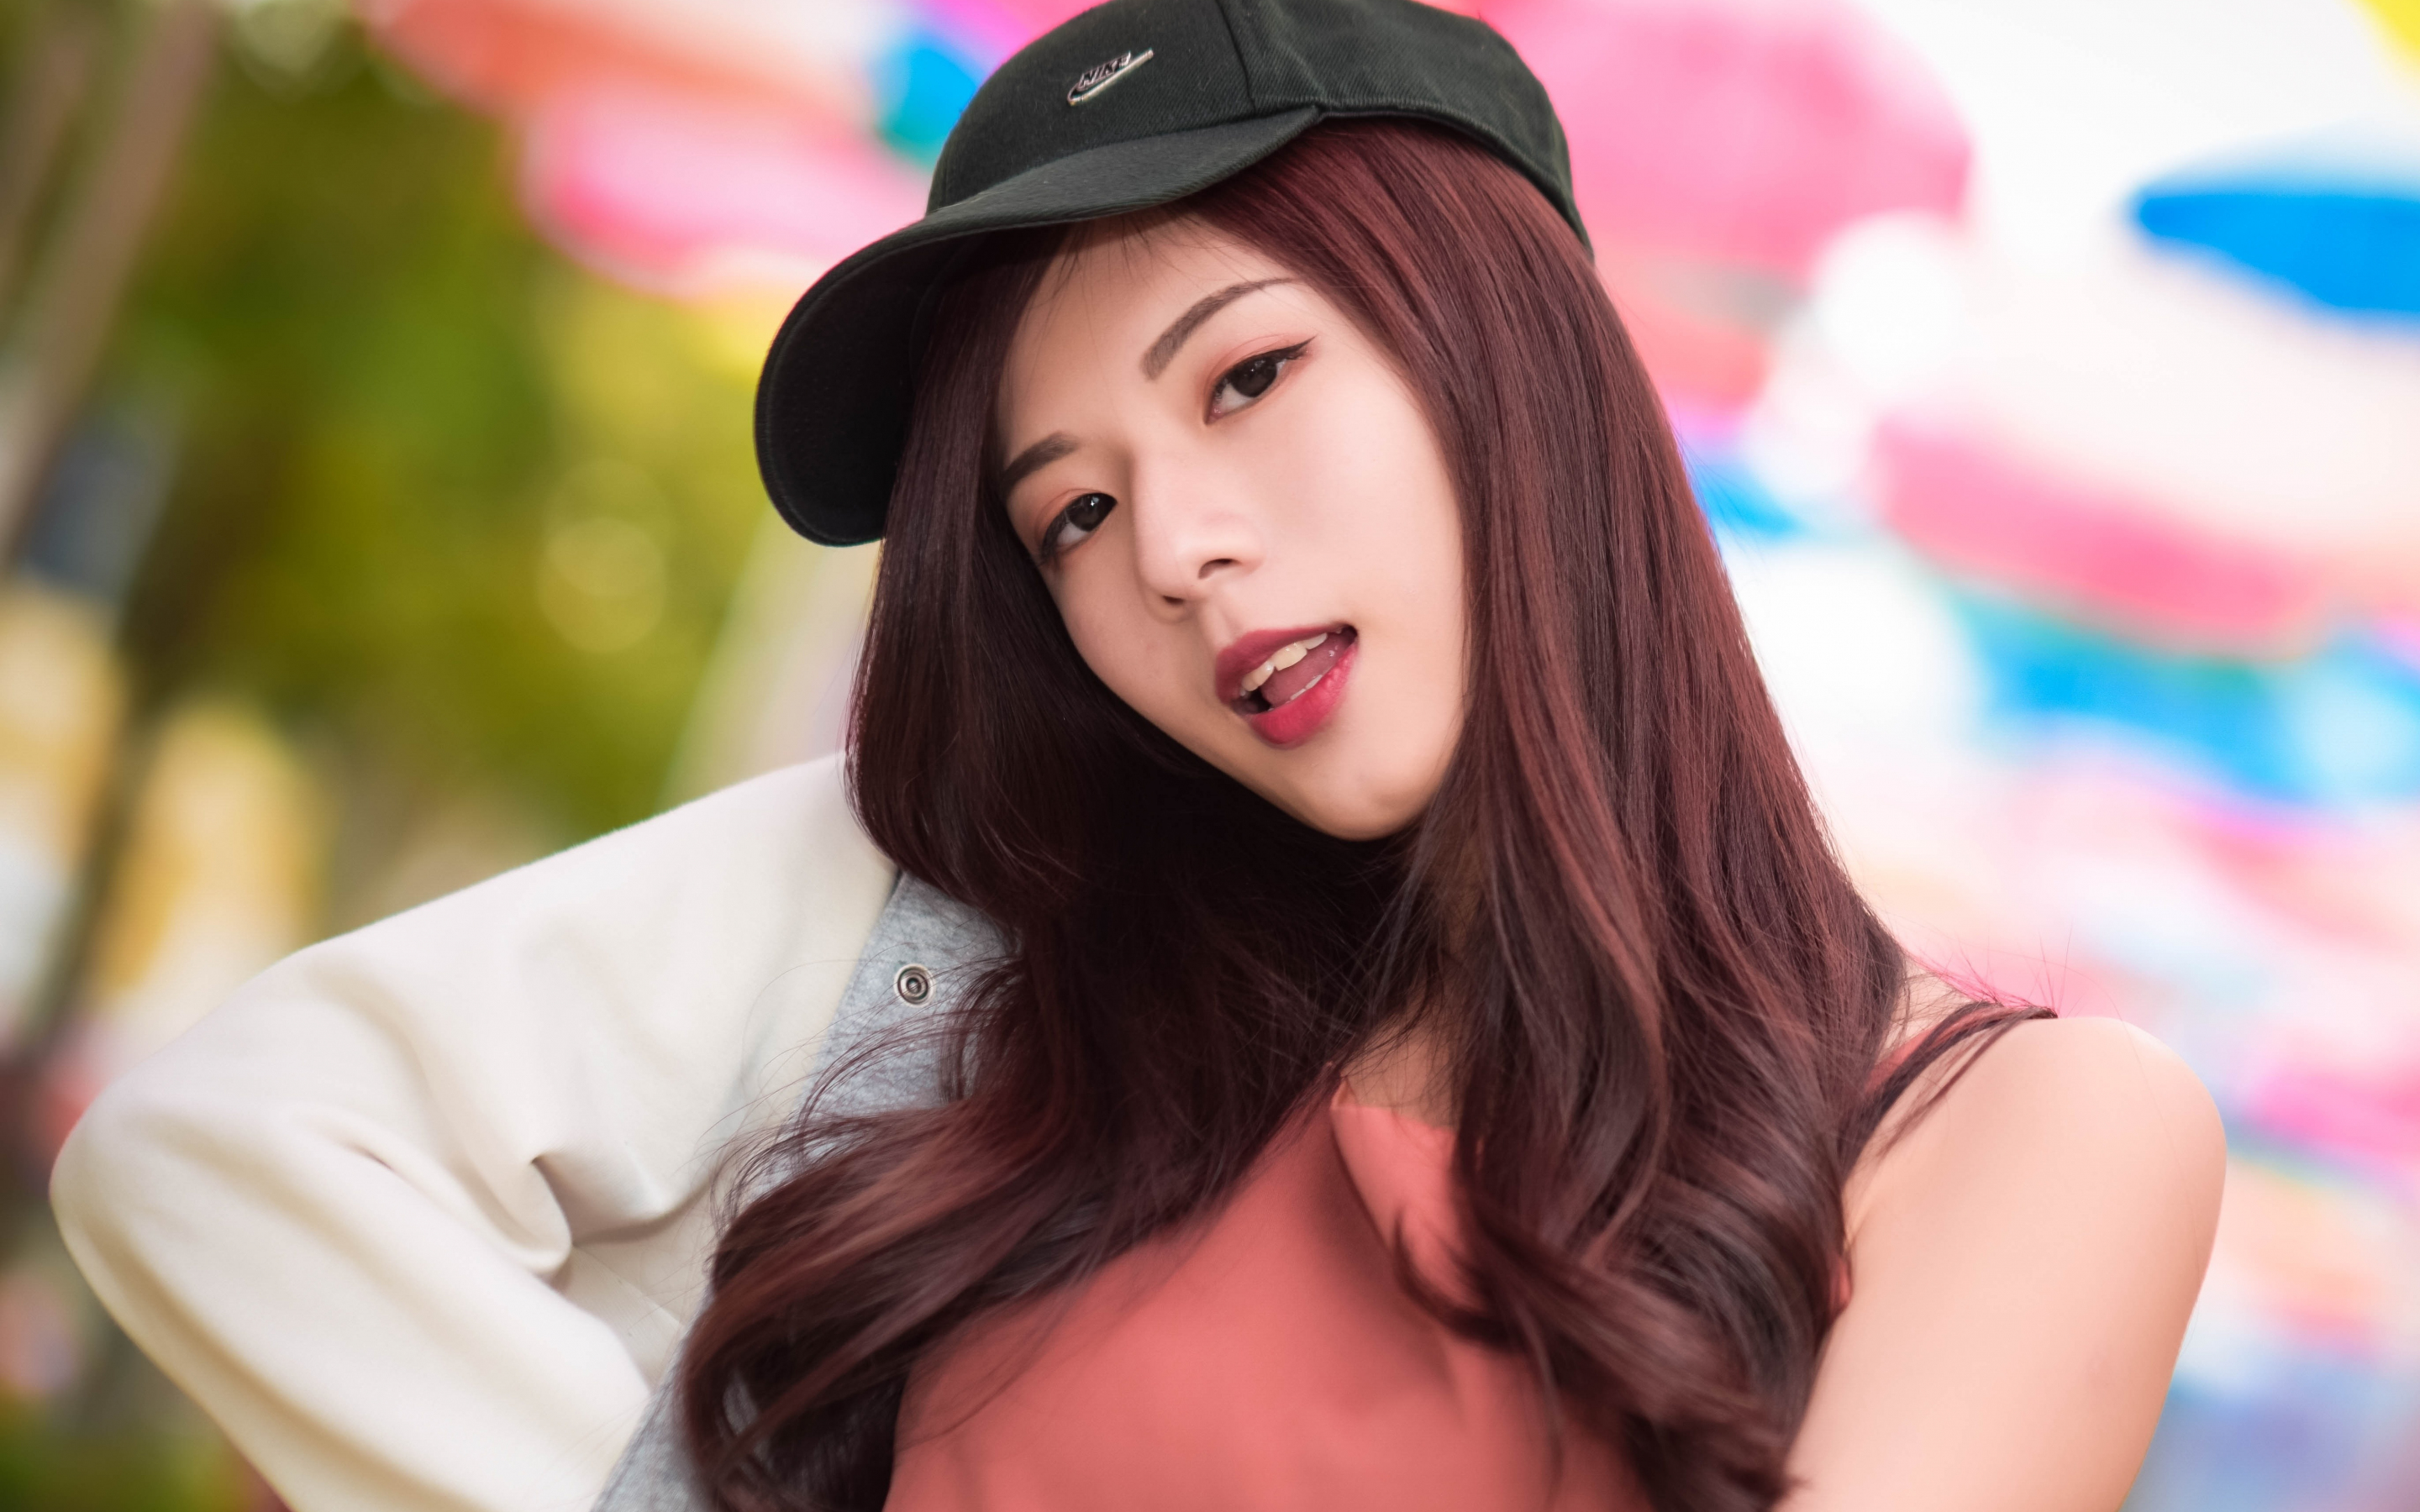 Beautiful, baseball cap, Asian woman, 2880x1800 wallpaper